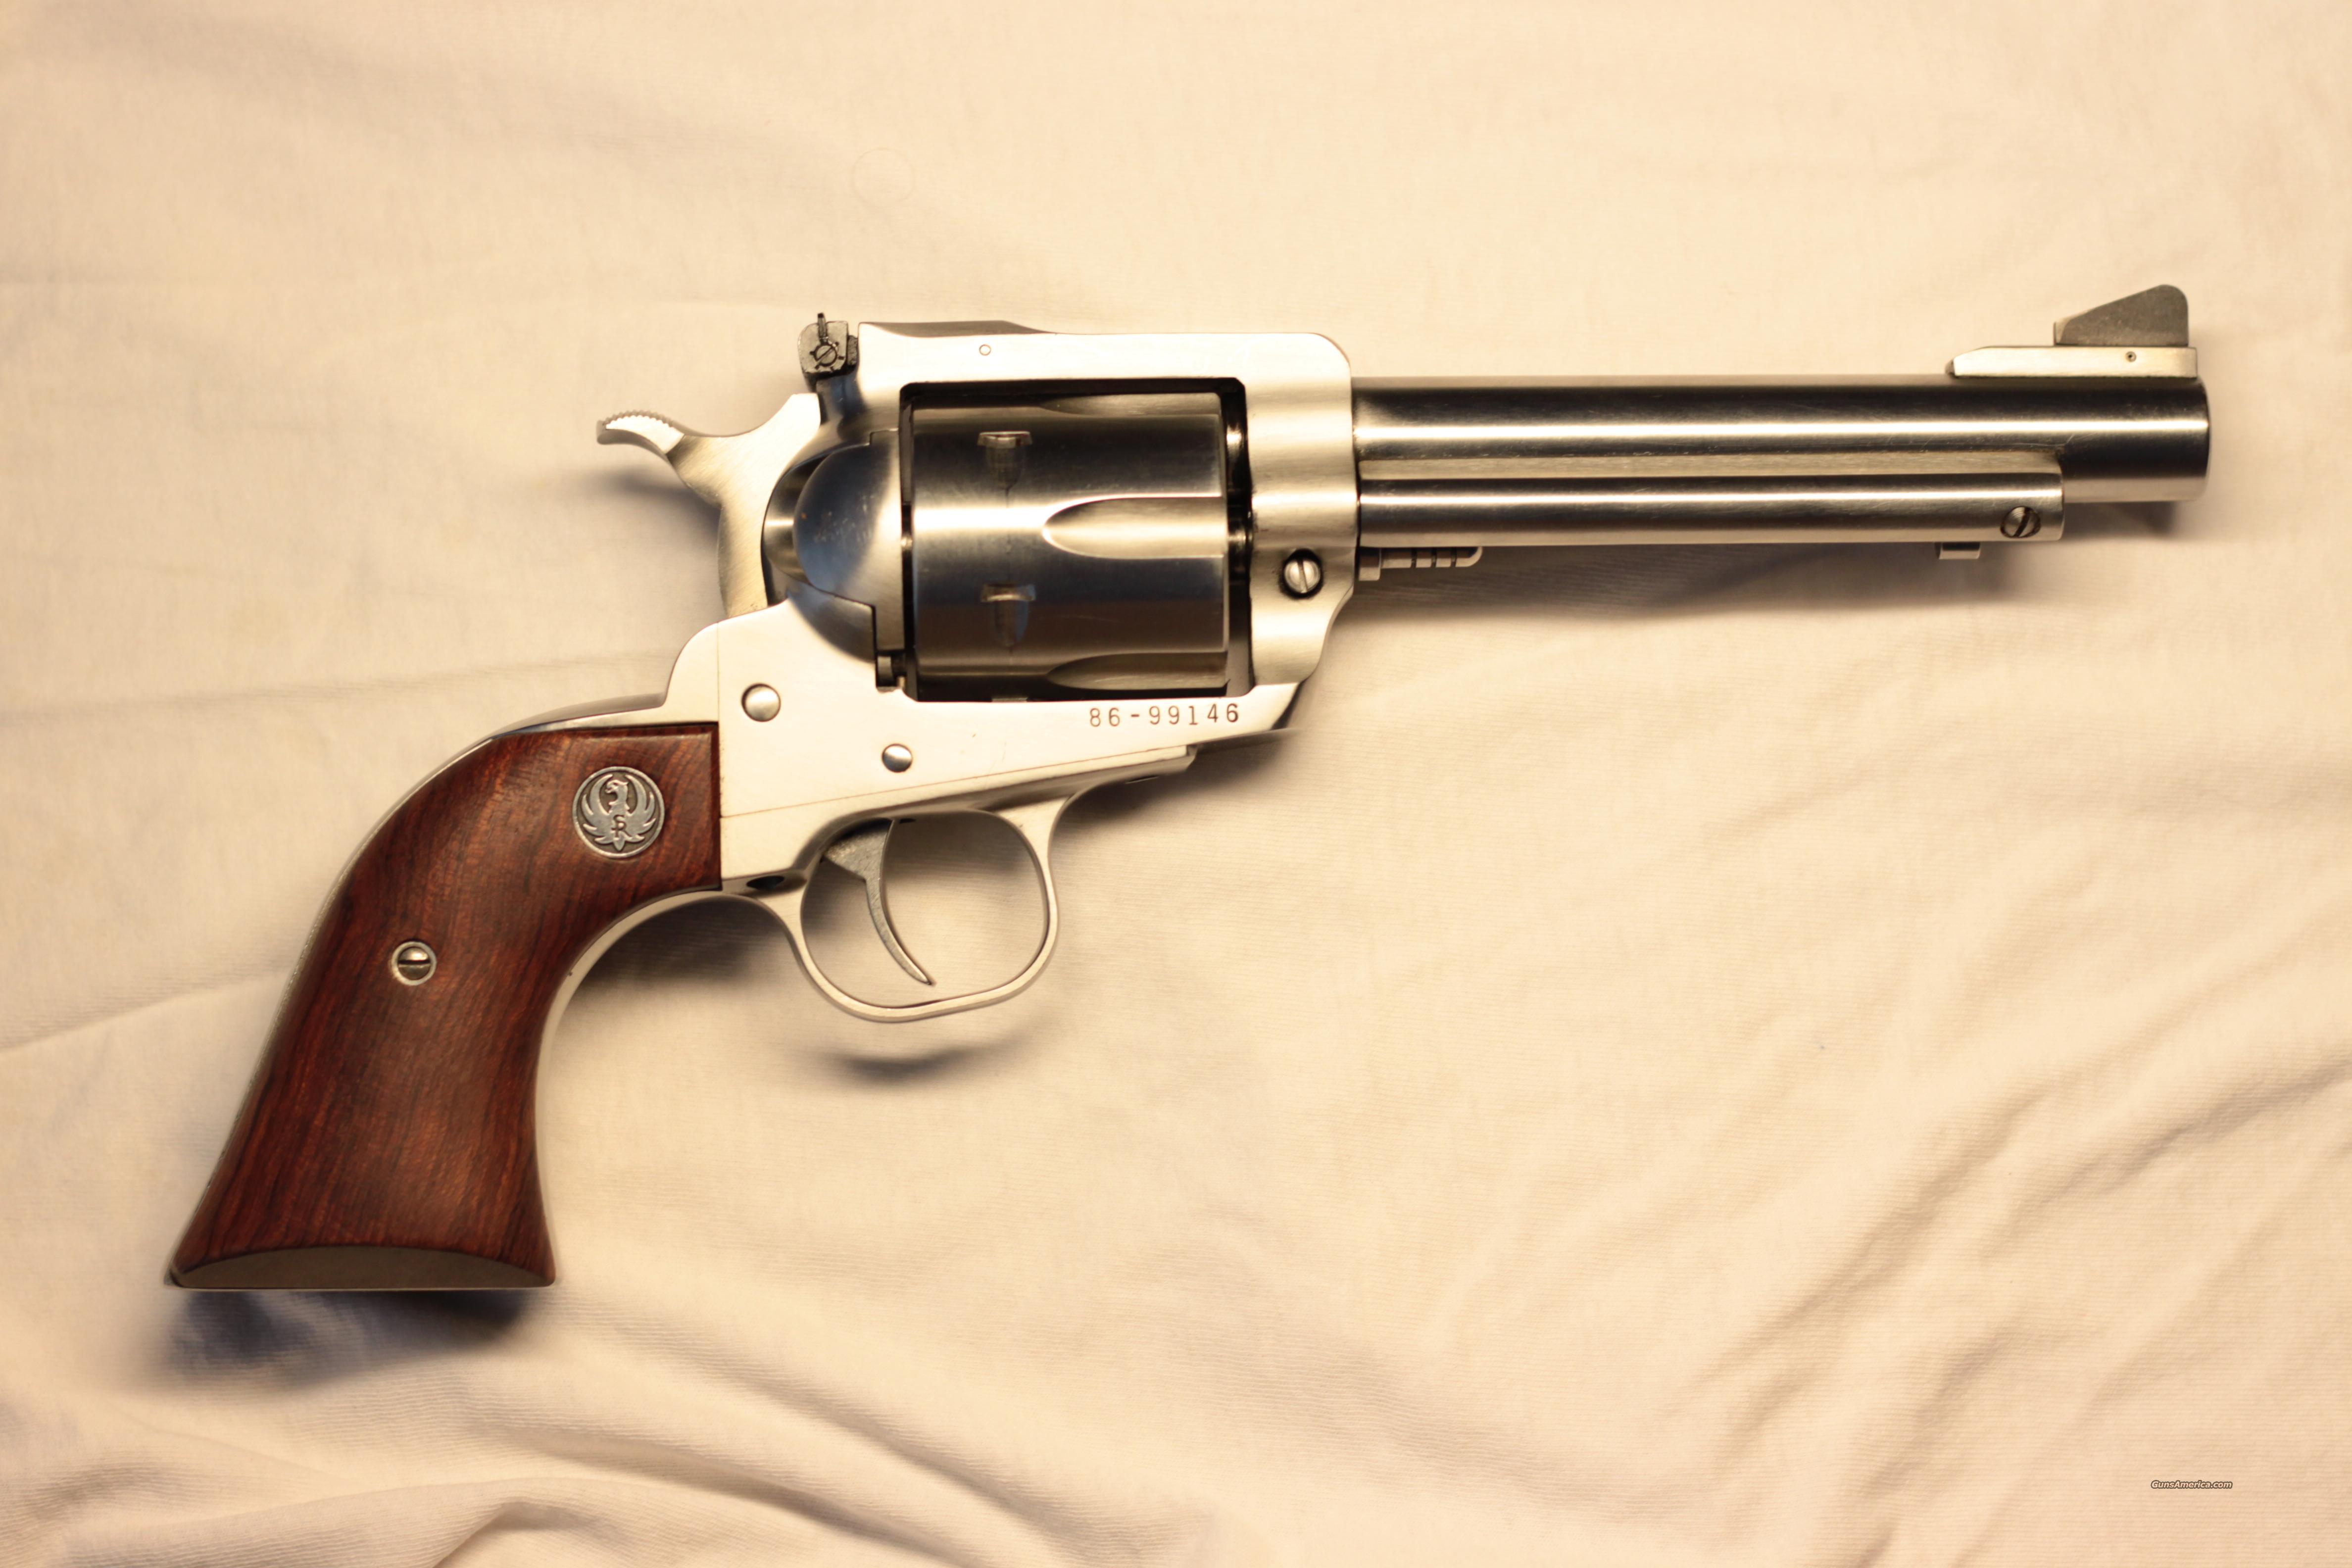 Ruger Super Blackhawk 44 Magnum For Sale At 952914343